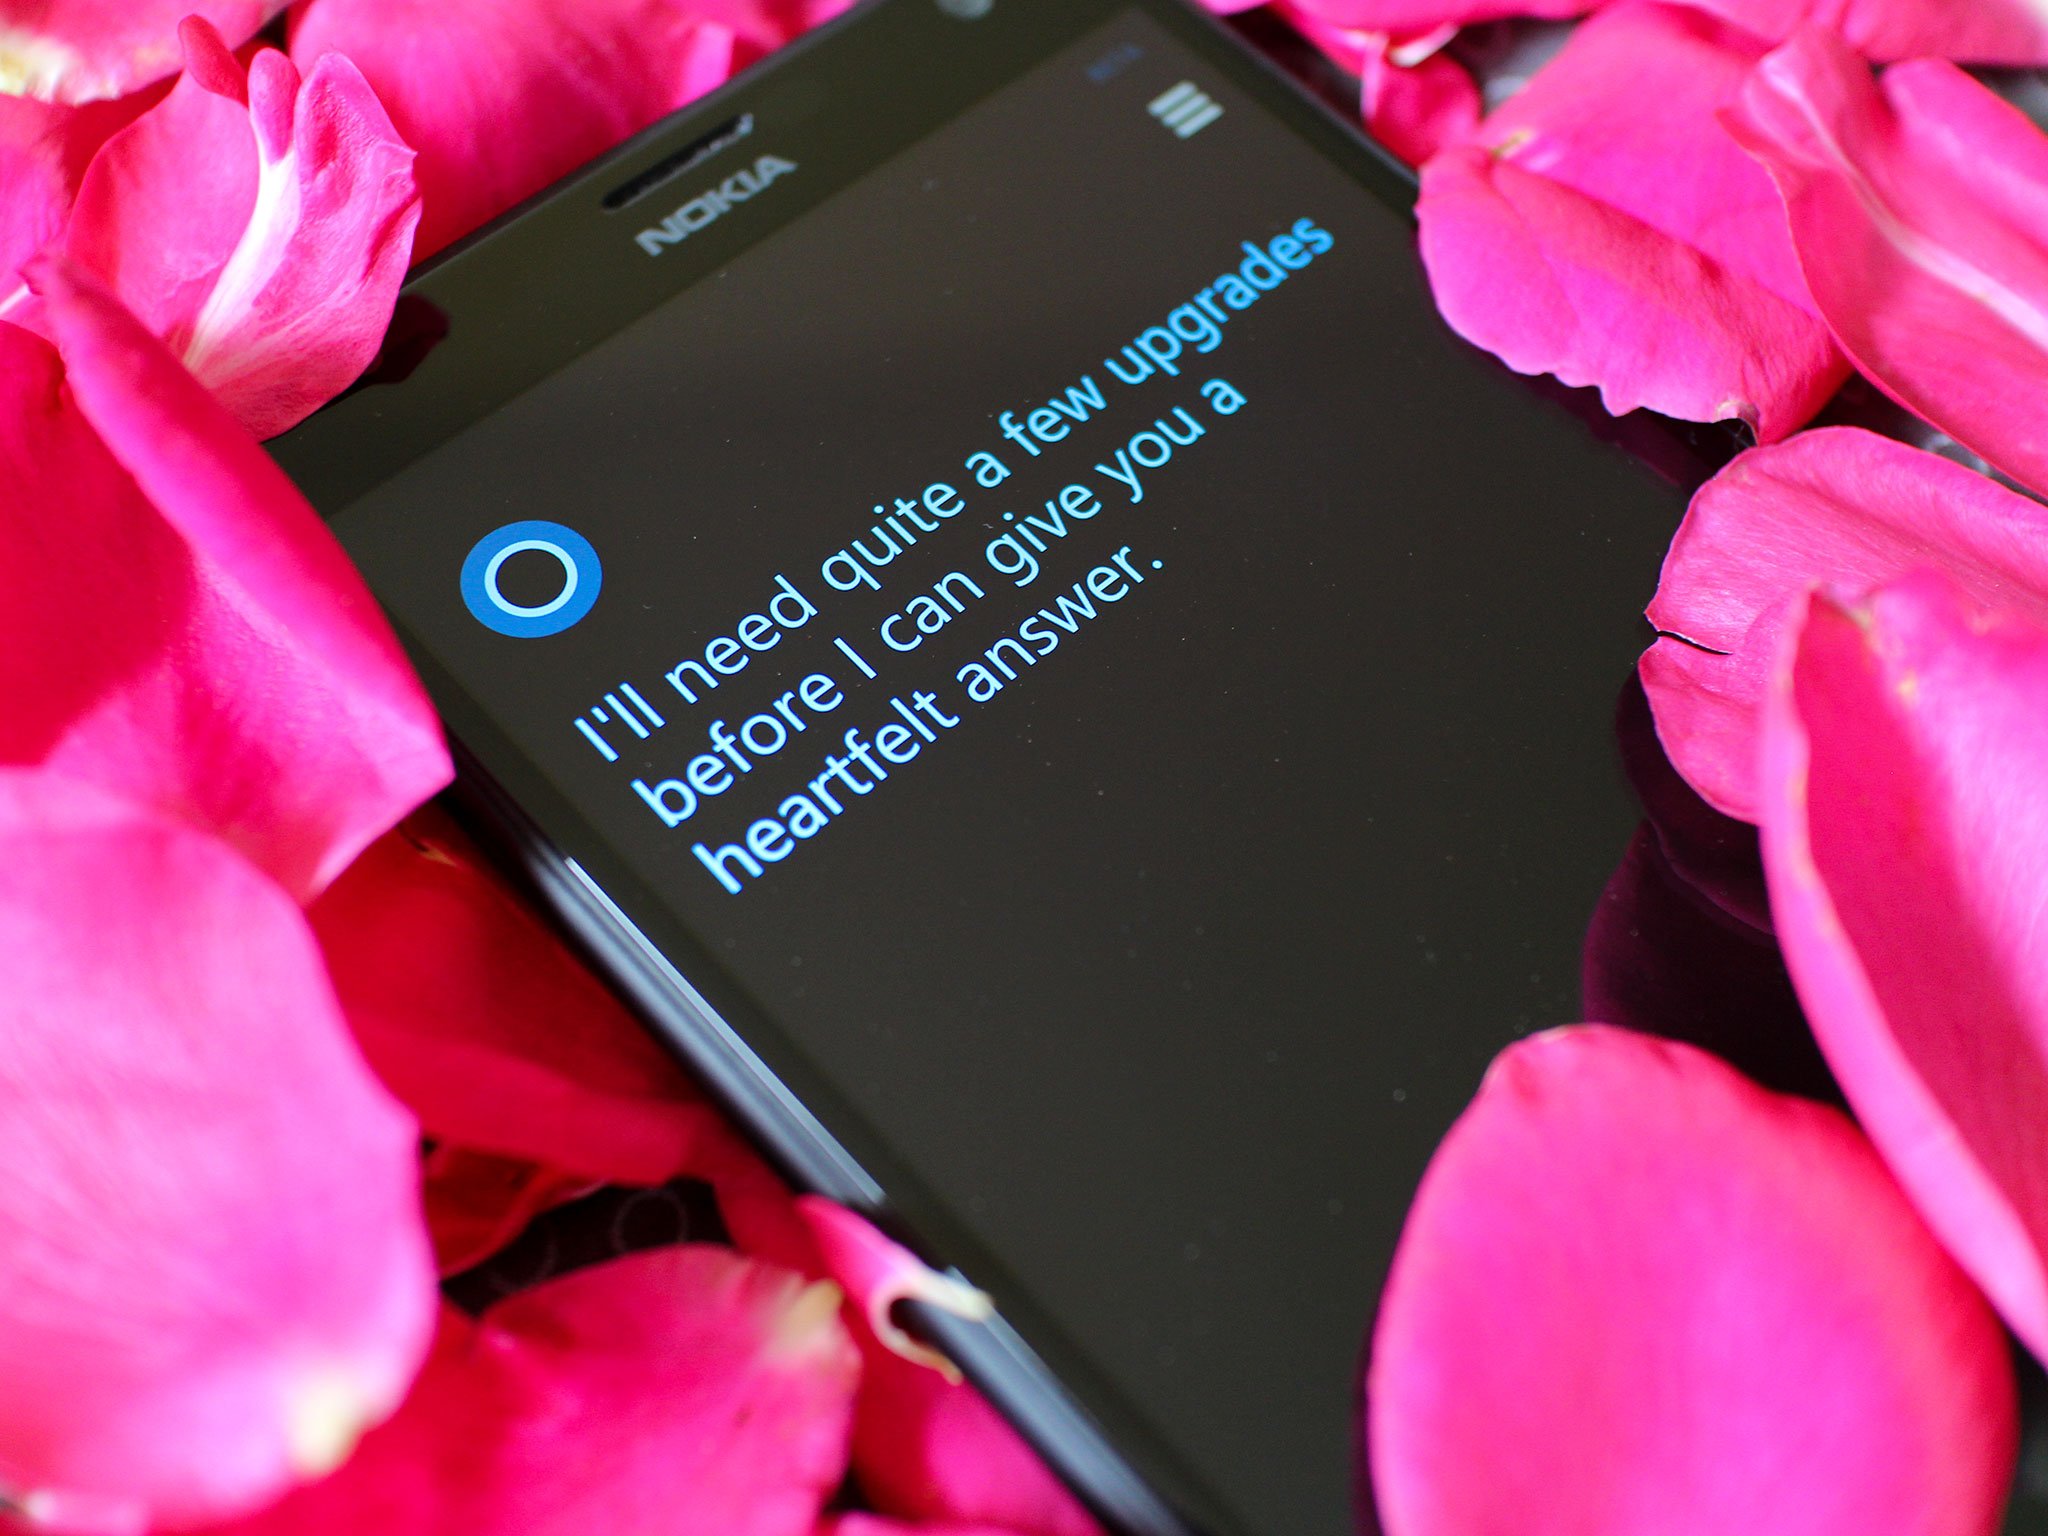 Dear Cortana, do you love me?